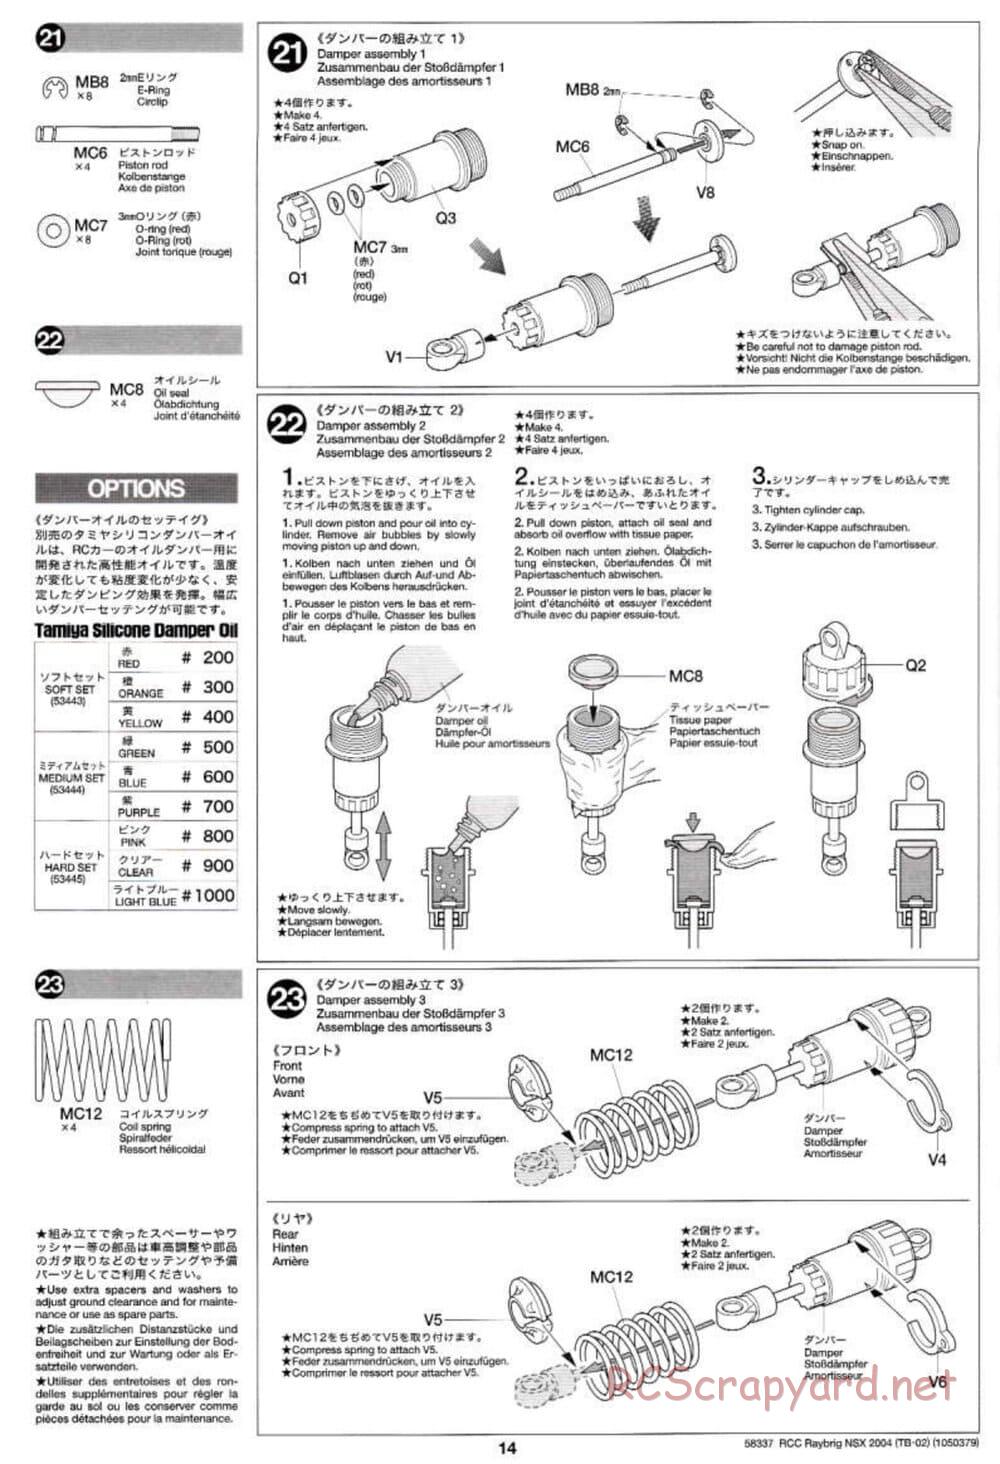 Tamiya - Raybrig NSX 2004 - TB-02 Chassis - Manual - Page 14